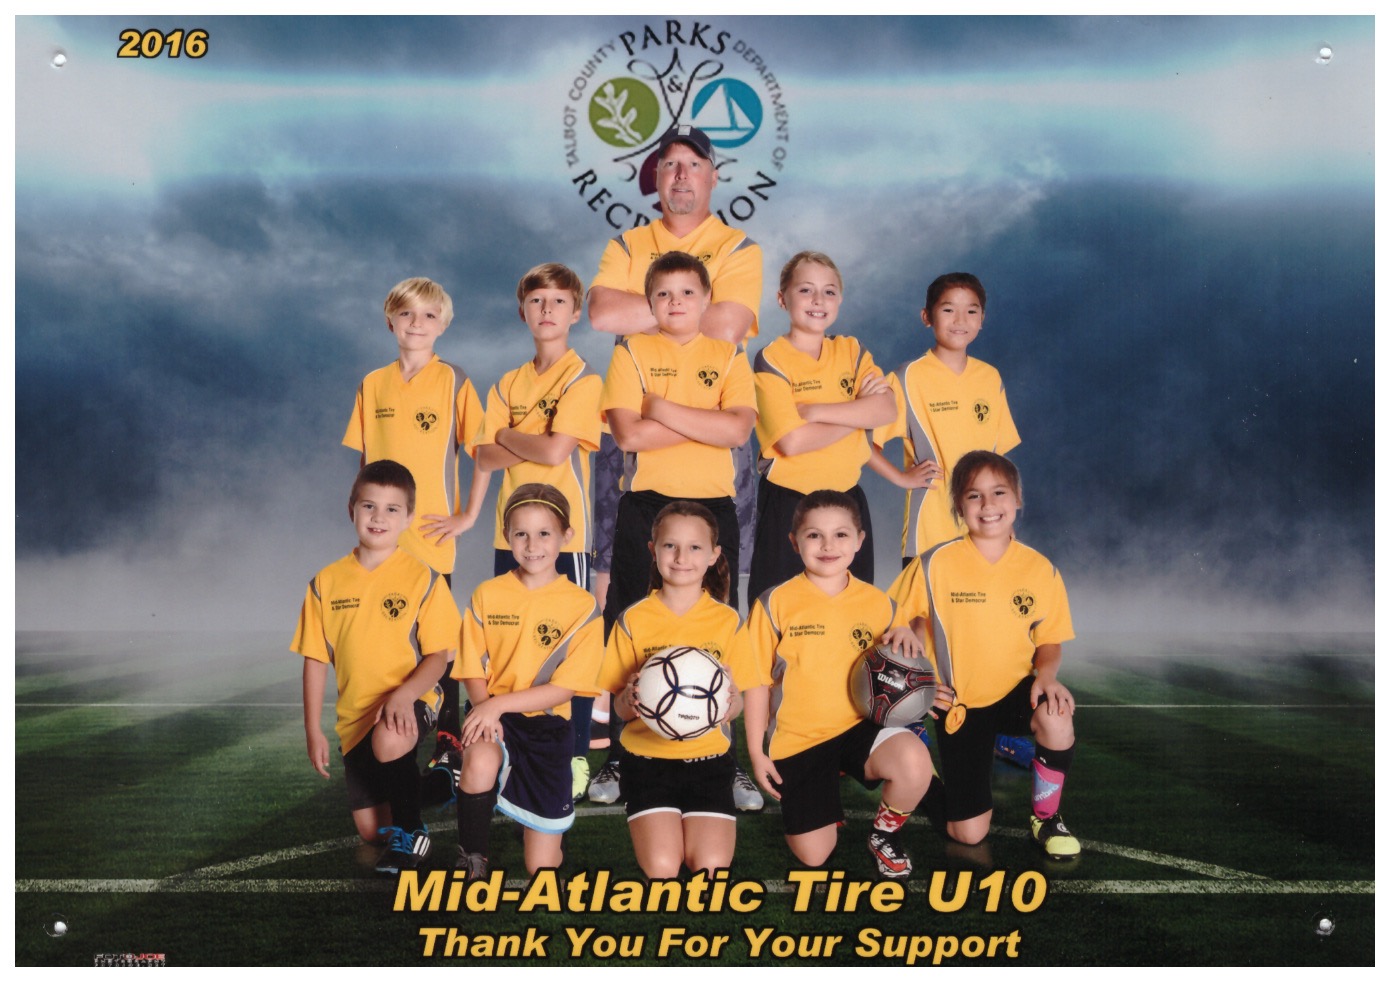 2016 Mid-Atlantic Tire Soccer Team